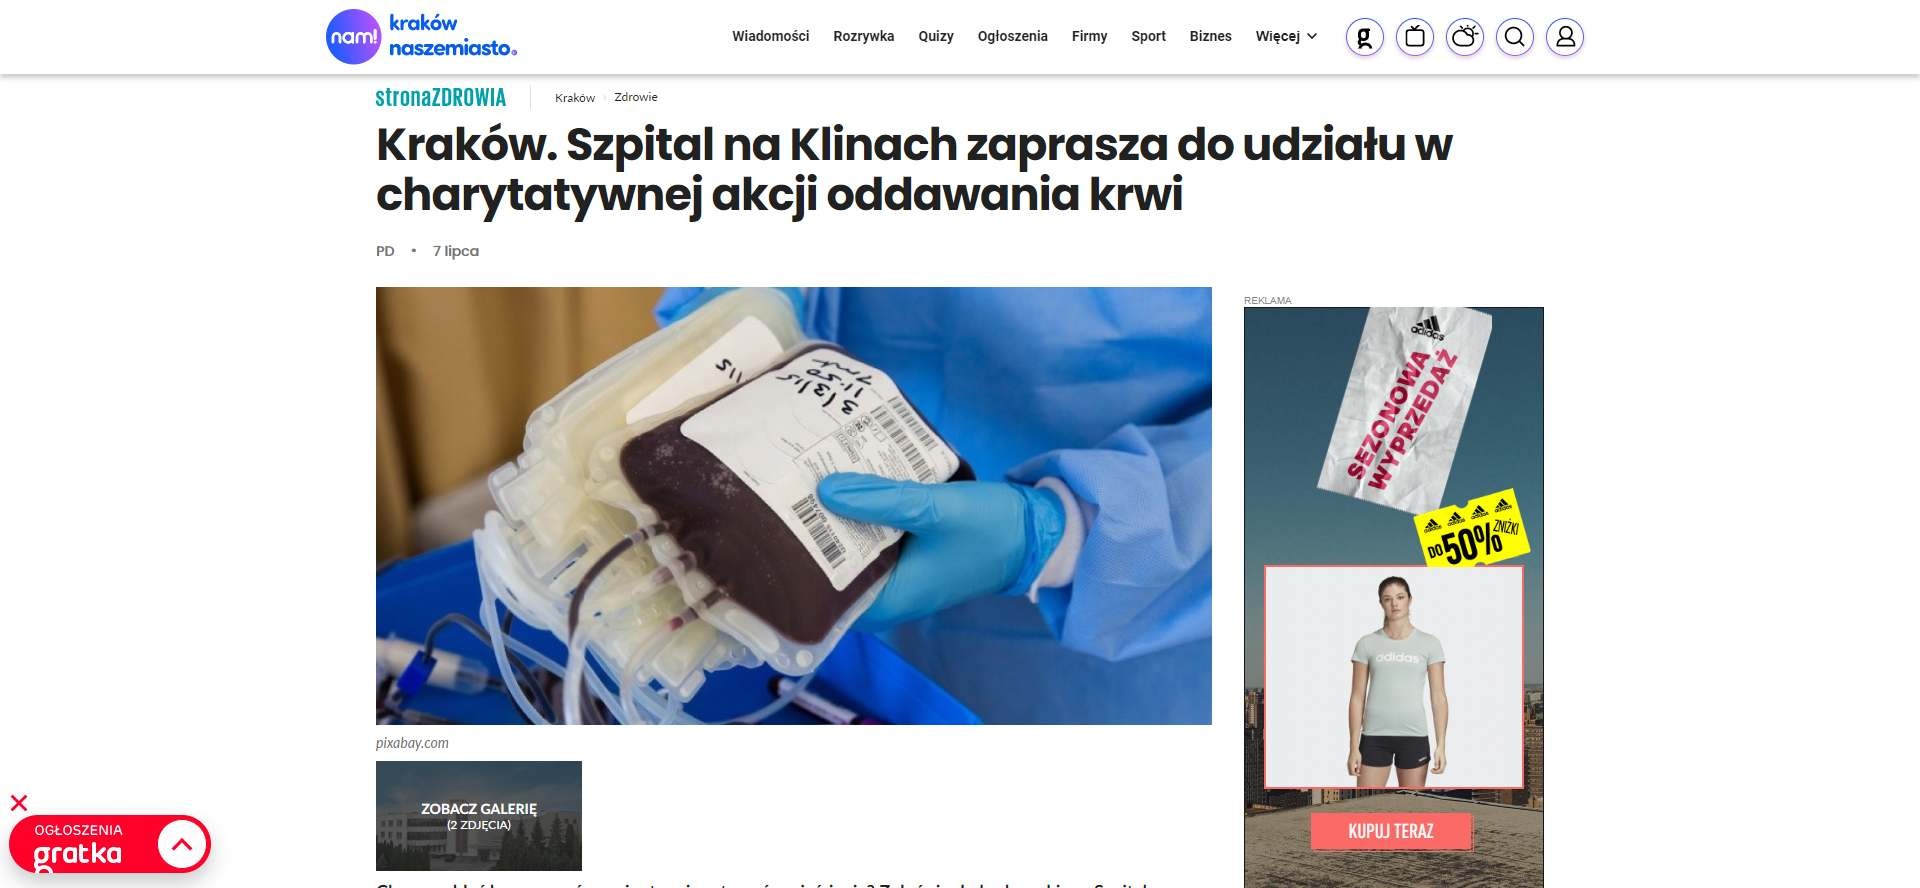 krakow szpital na klinach zaprasza do udzialu w charytatywnej akcji oddawania krwi